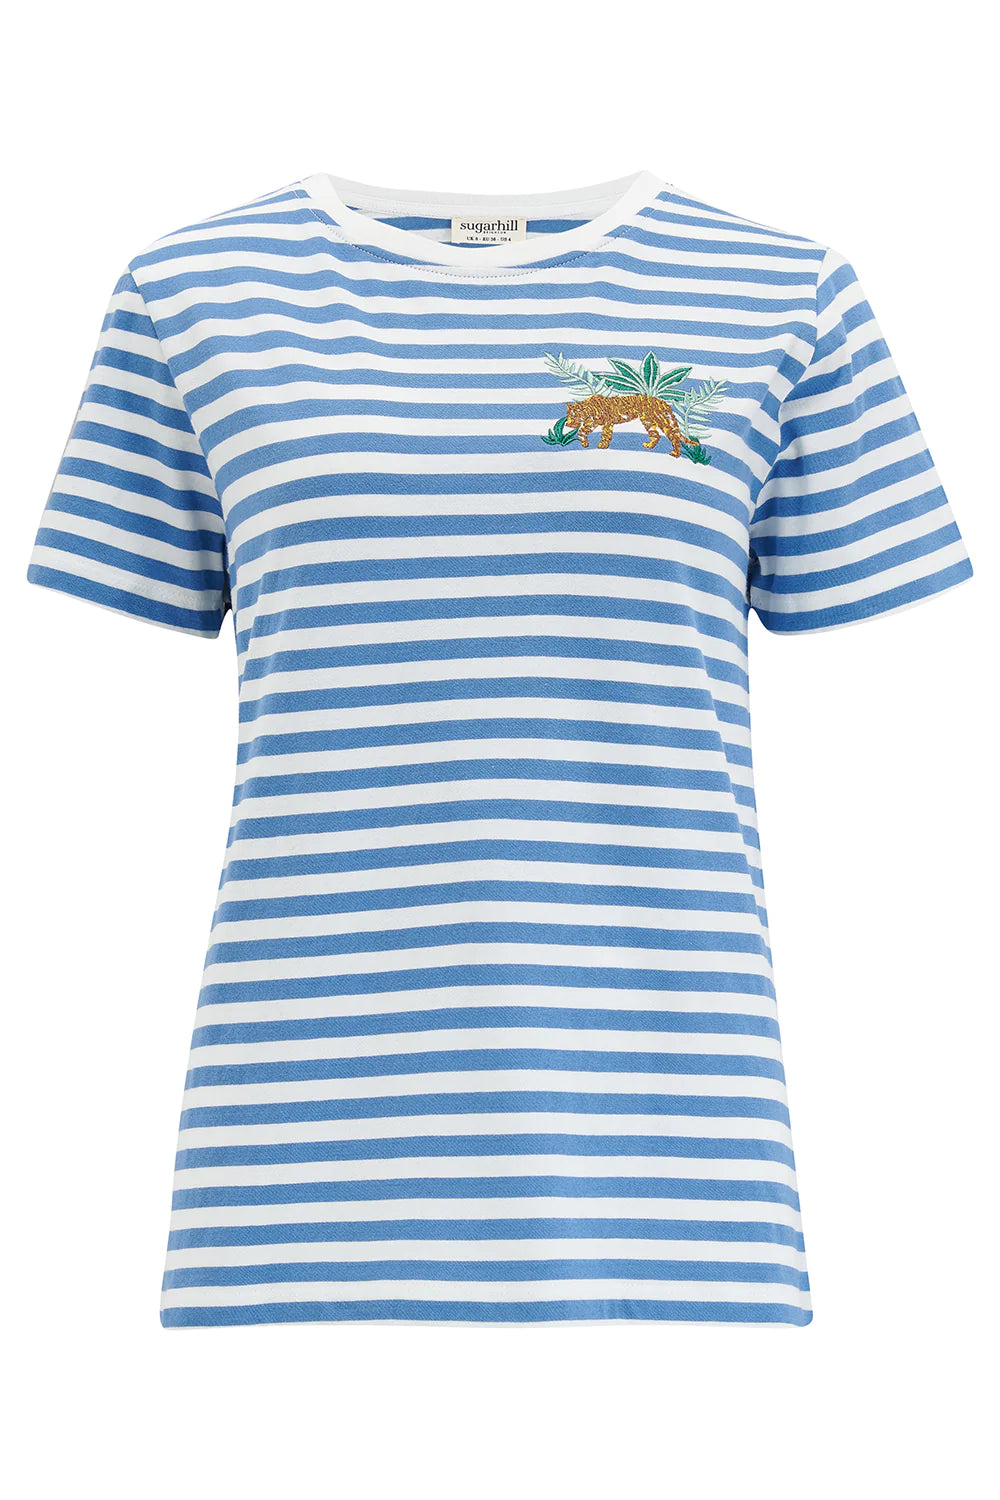 Sugarhill Brighton Maggie T-shirt - Blue/White, Tiger Embroidery